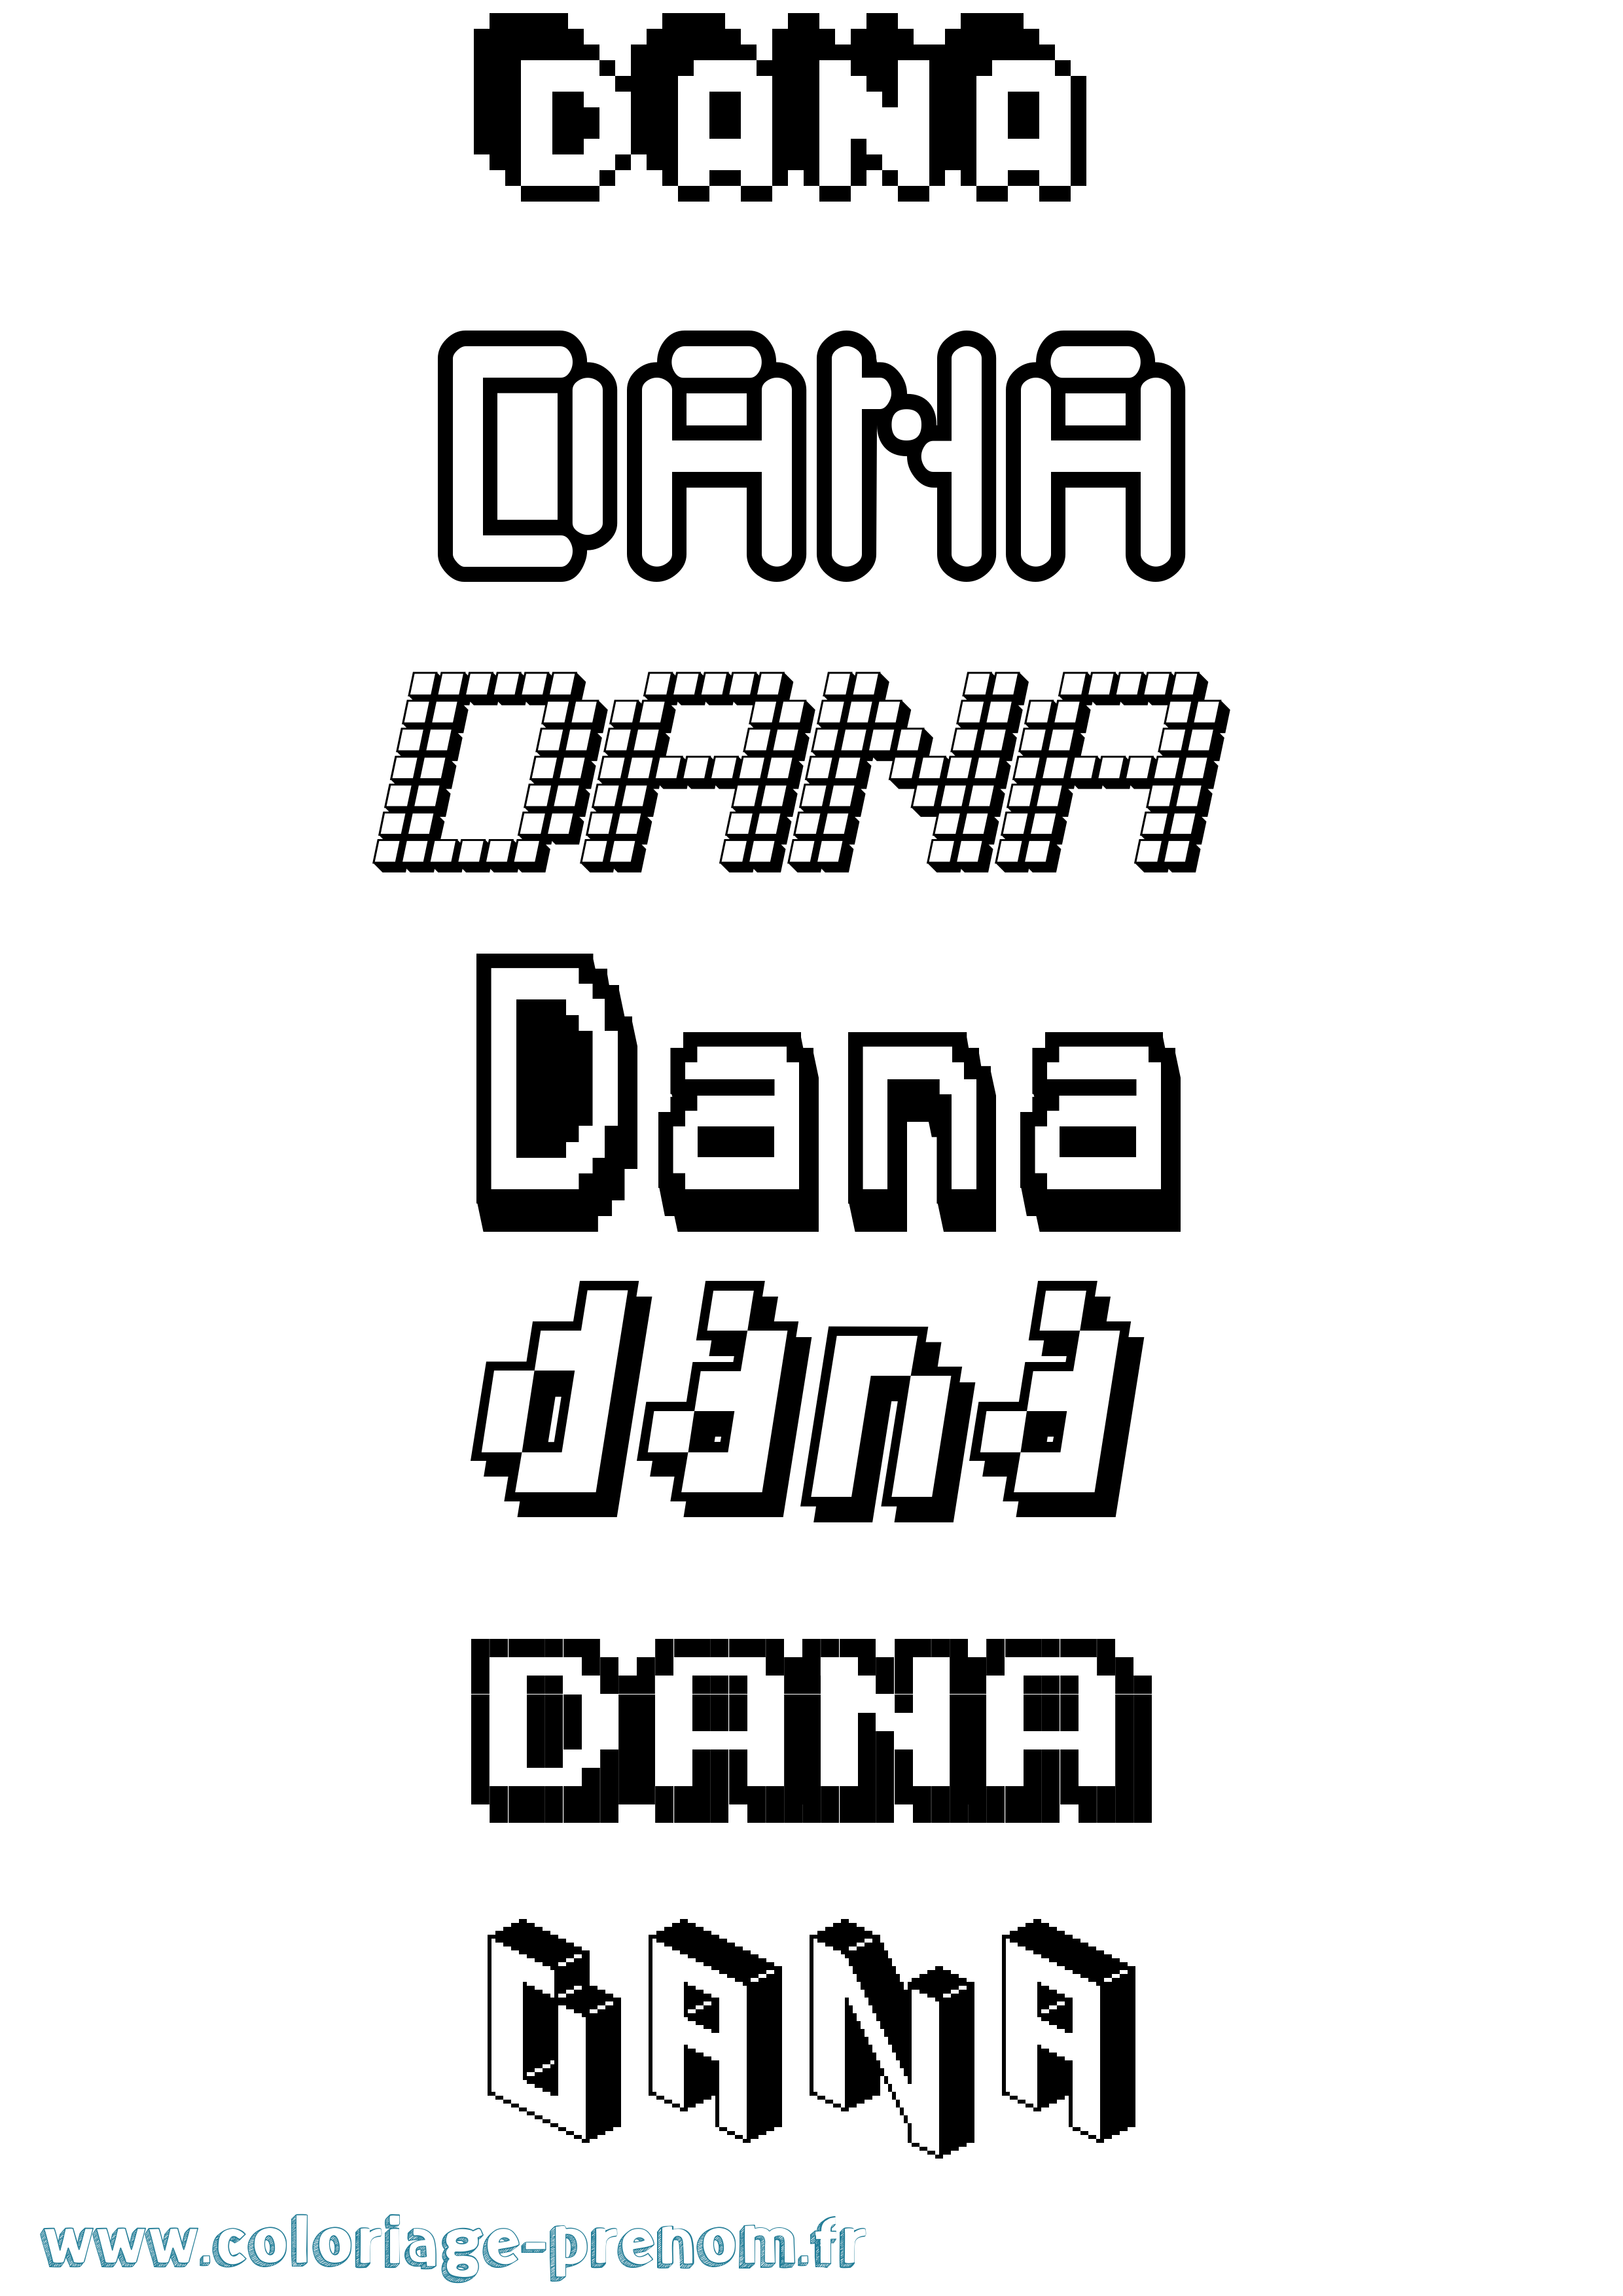 Coloriage prénom Dana